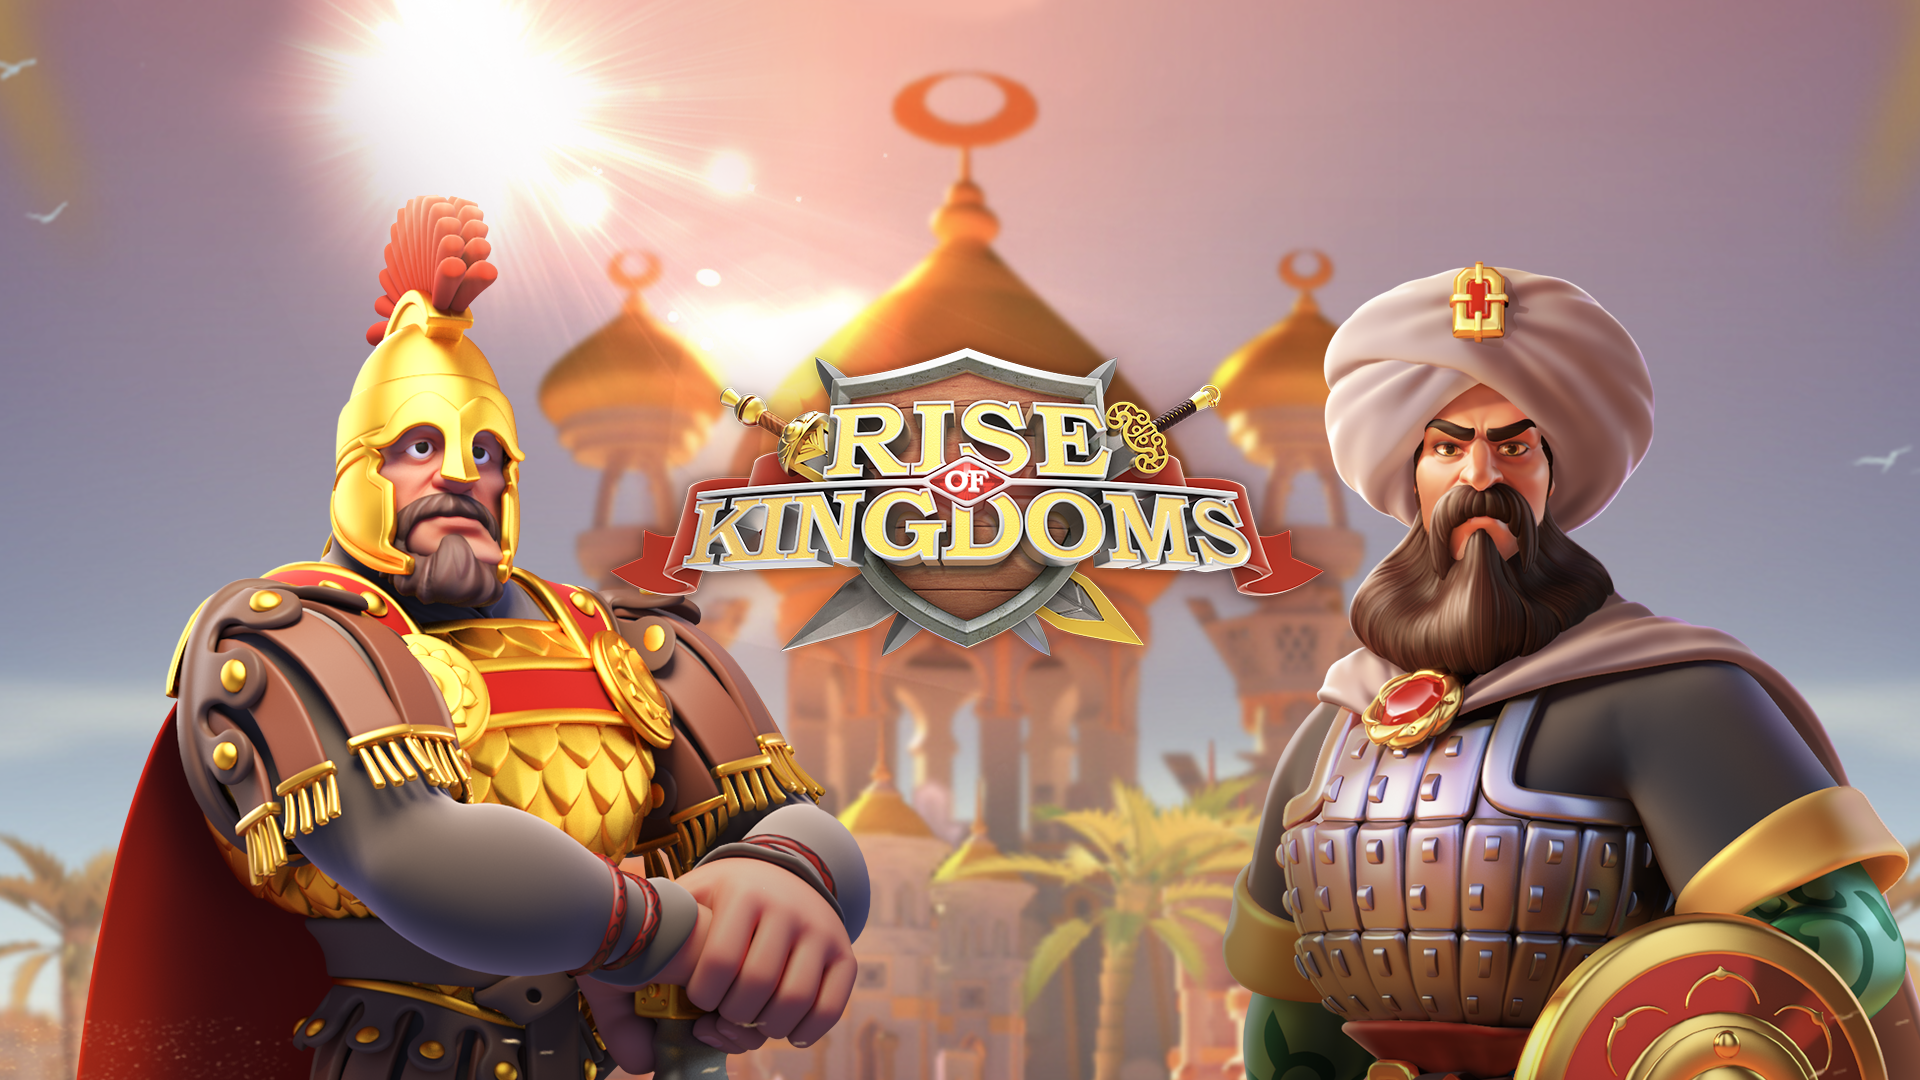 Kode Redeem Game Rise of Kingdoms, Kamis, 2 Februari 2023. Segera Klaim Kode Redeemnya Sebelum Kehabisan